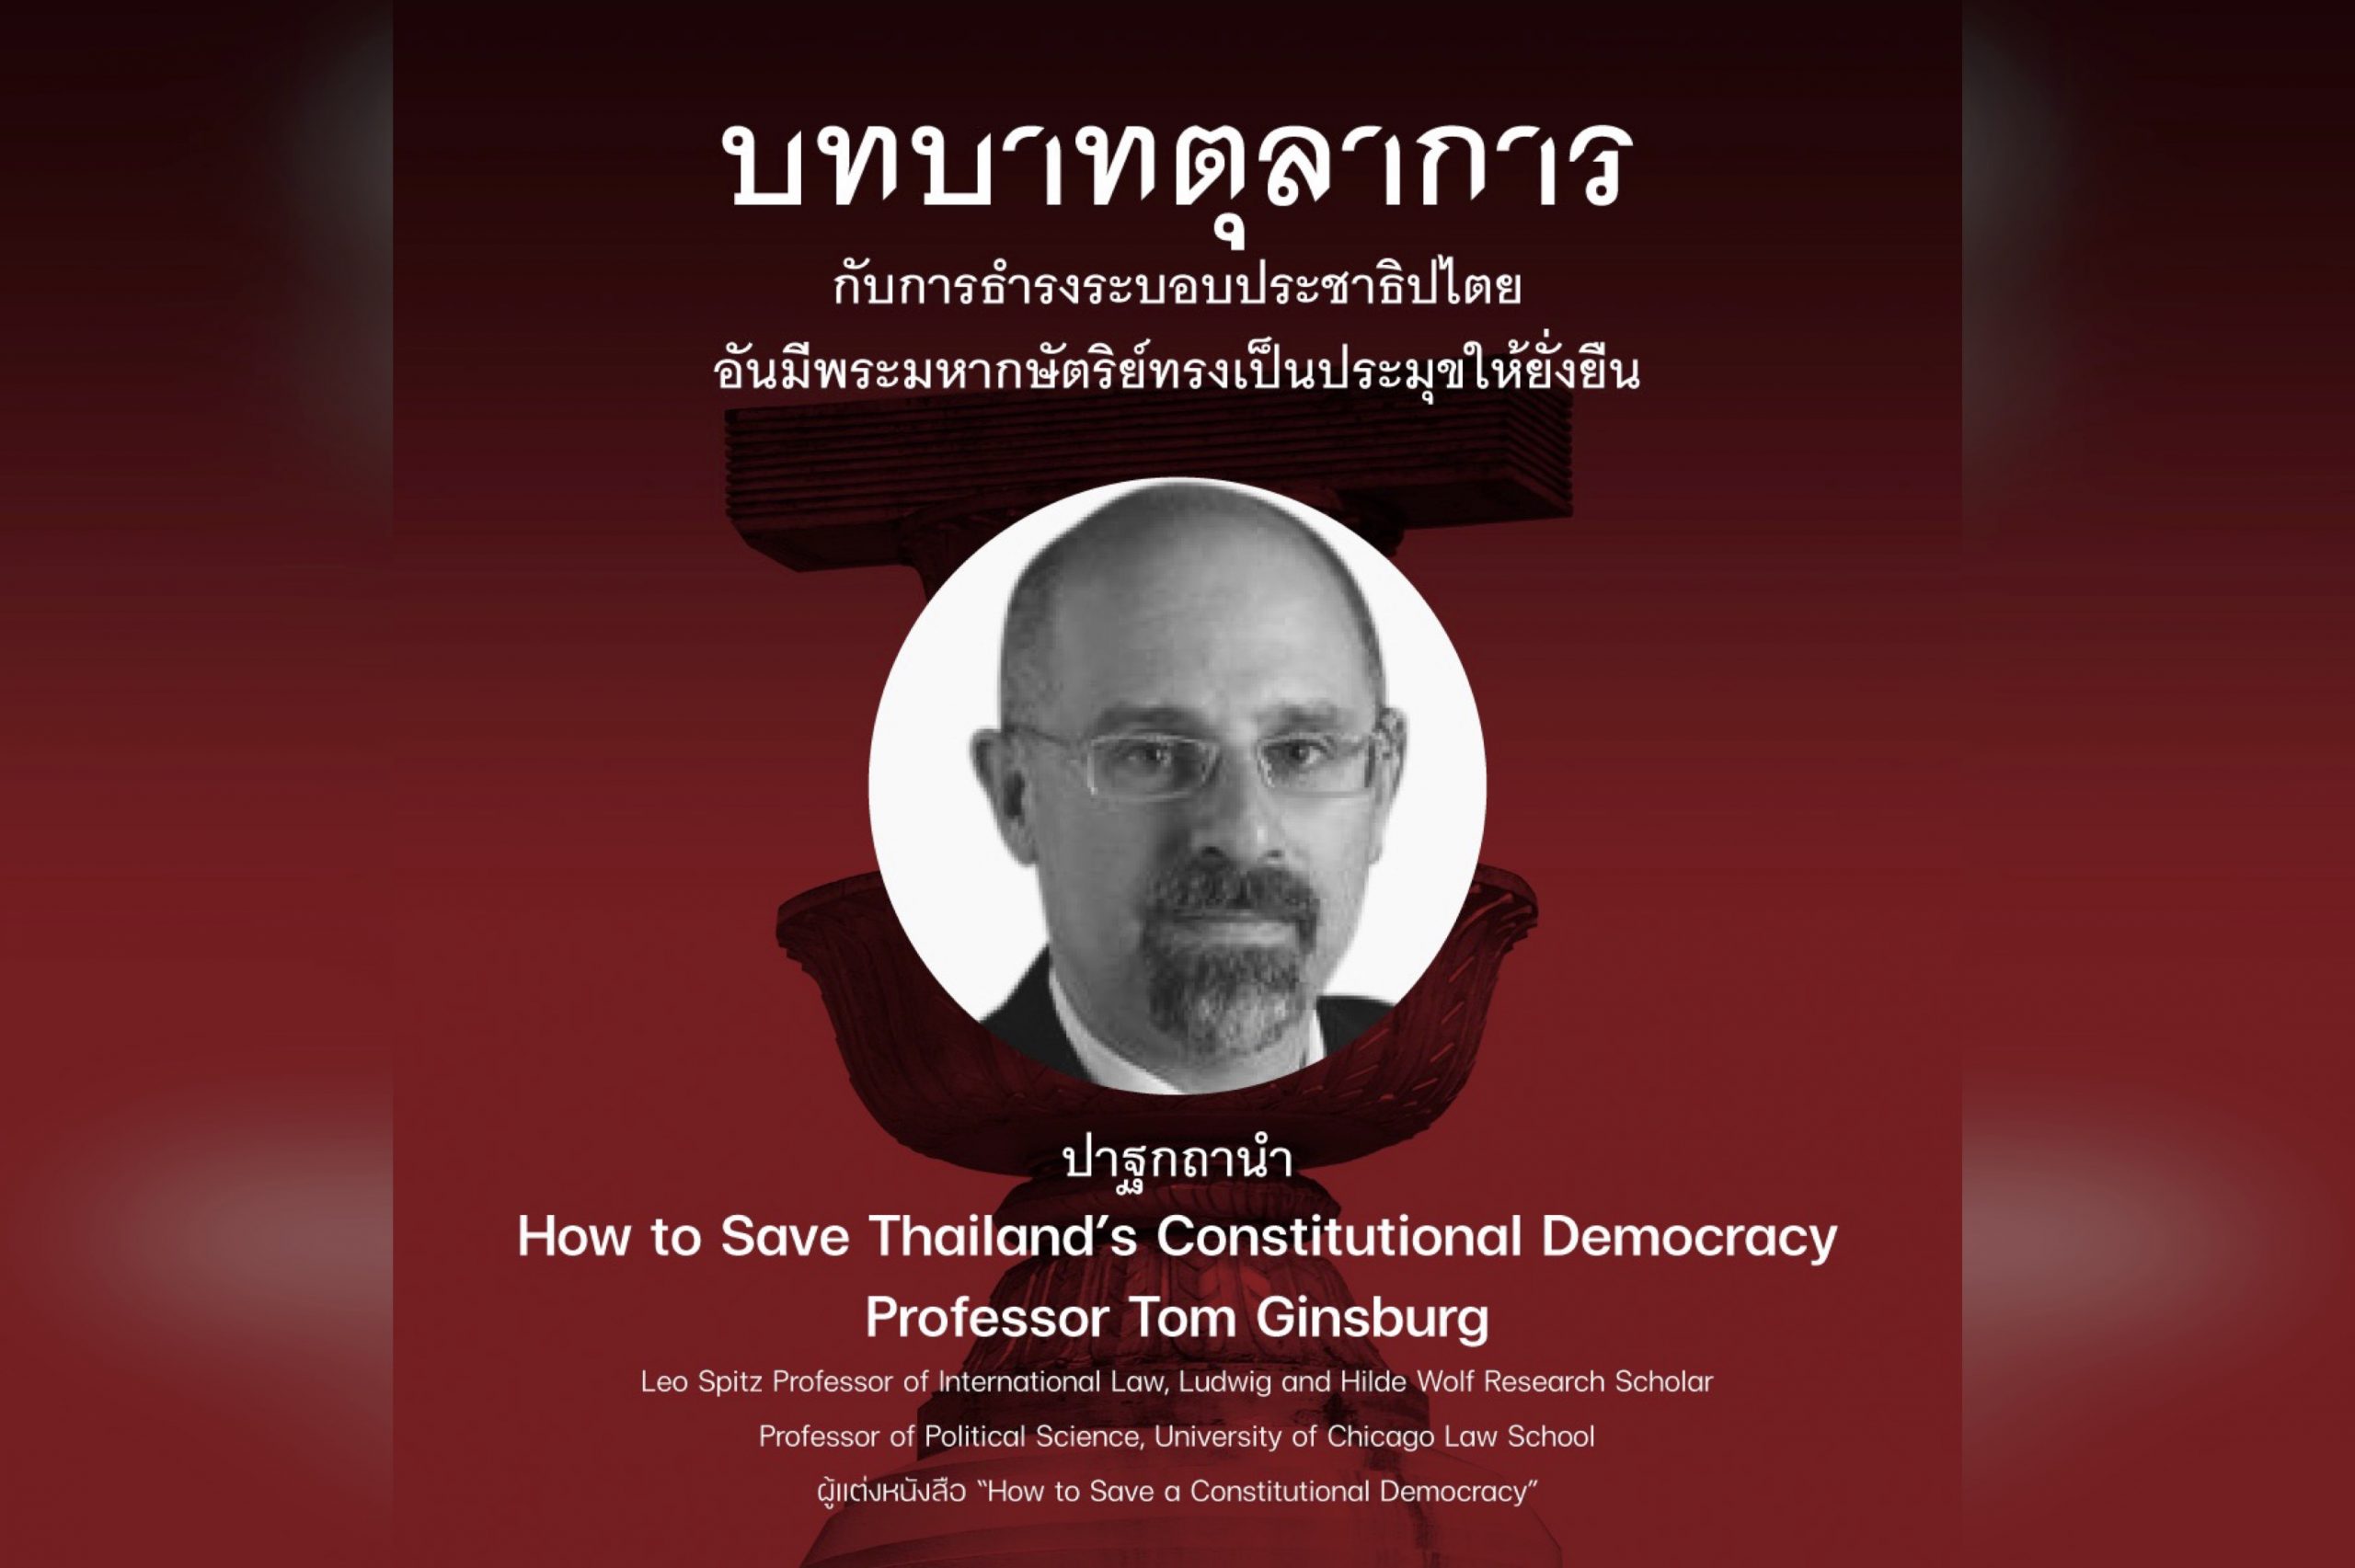 สรุปสาระสำคัญจากปาฐกถานำ “How to Save Thailand’s Constitutional Democracy” by Professor Tom Ginsburg